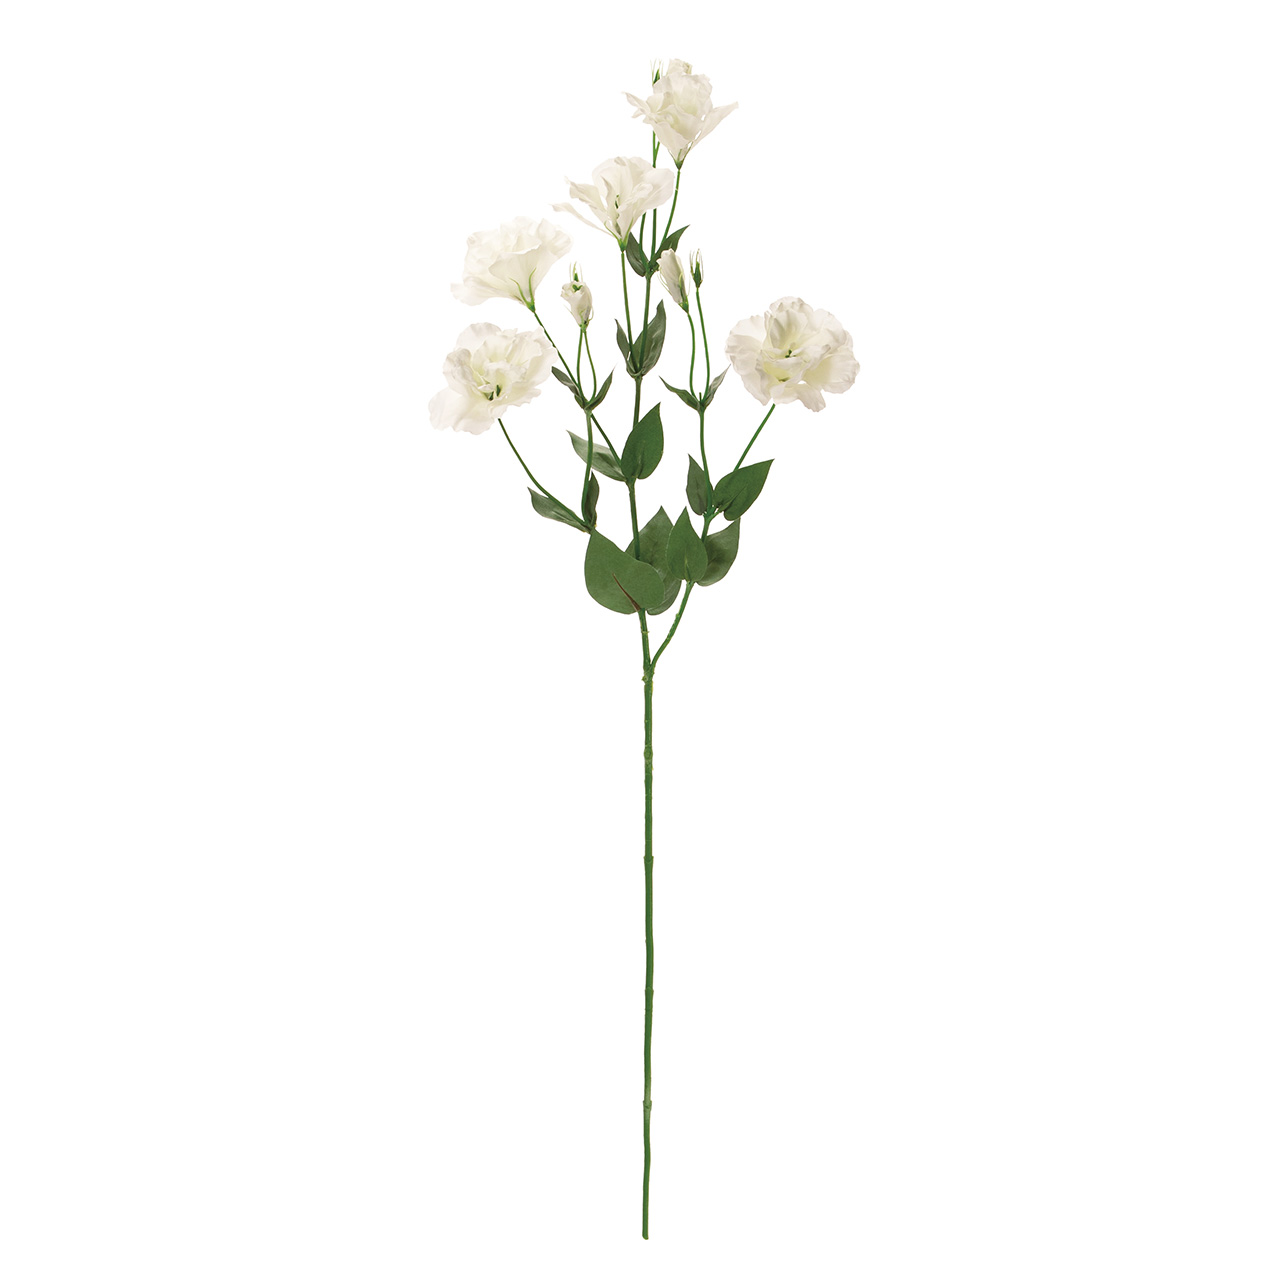 マイフラ 通販 Magiq グランリシアンサス クリームホワイト アーティフィシャルフラワー 造花 リシアンサス トルコキキョウ Fm 001 クリームホワイト Magiq アーティフィシャルフラワー 造花 全国にmagiq 花器 花資材などをお届けします